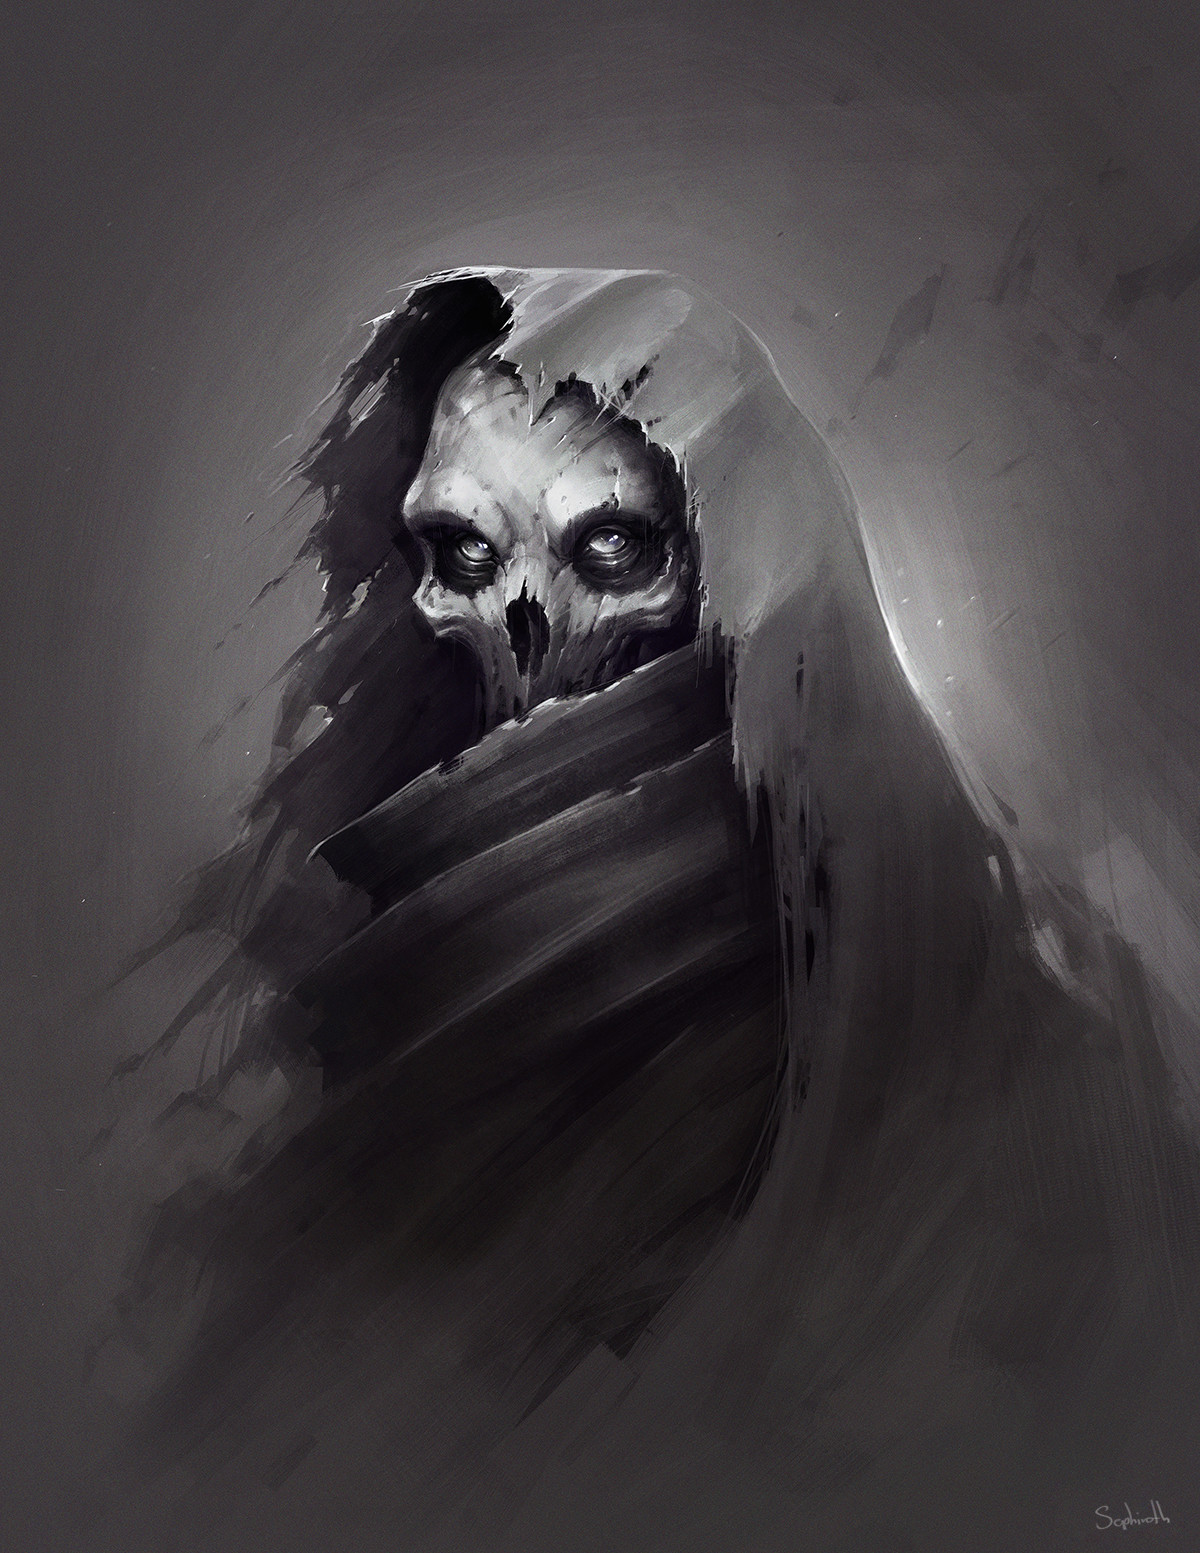 General 1200x1553 drawing digital art men skull horror monochrome Sephiroth hoods